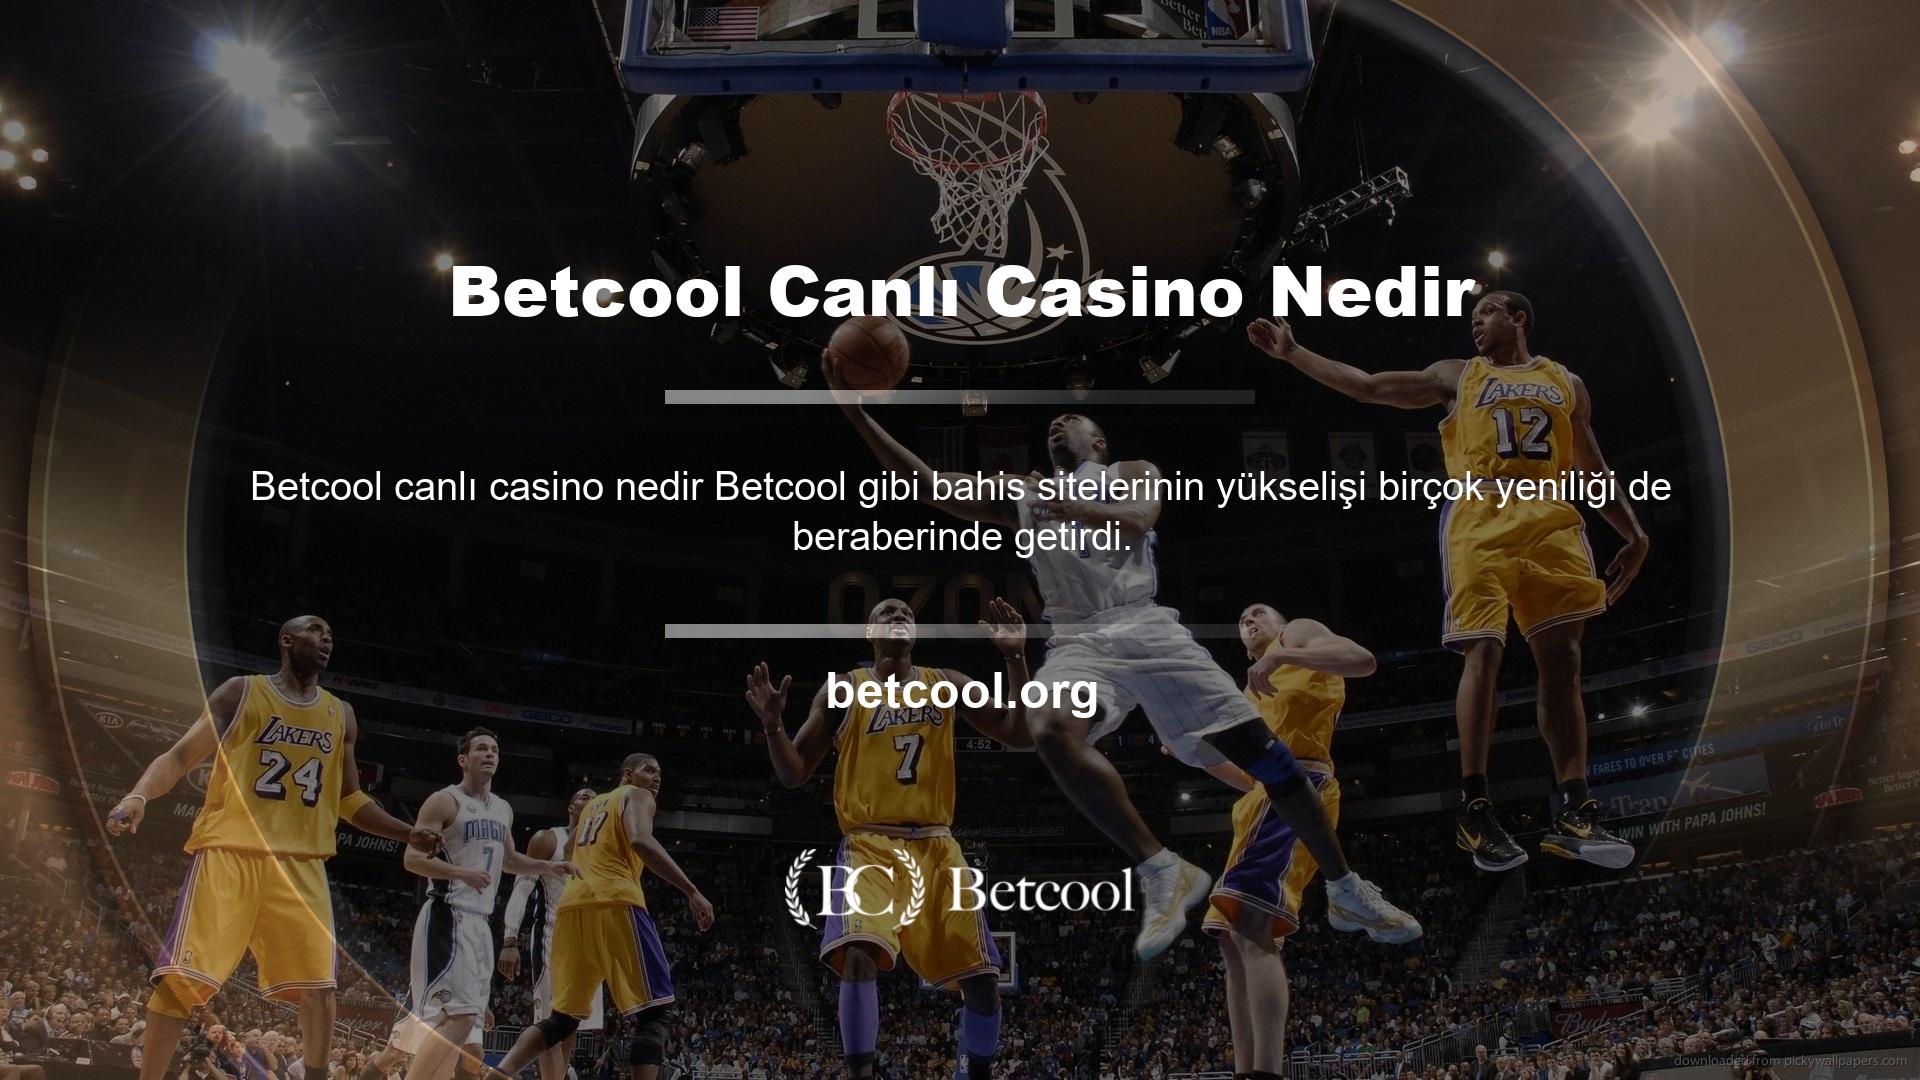 Betcool Canlı Casino Nedir? Canlı casino giriş sayfasına tıkladığınızda karşınıza çeşitli seçenekler sunulacaktır